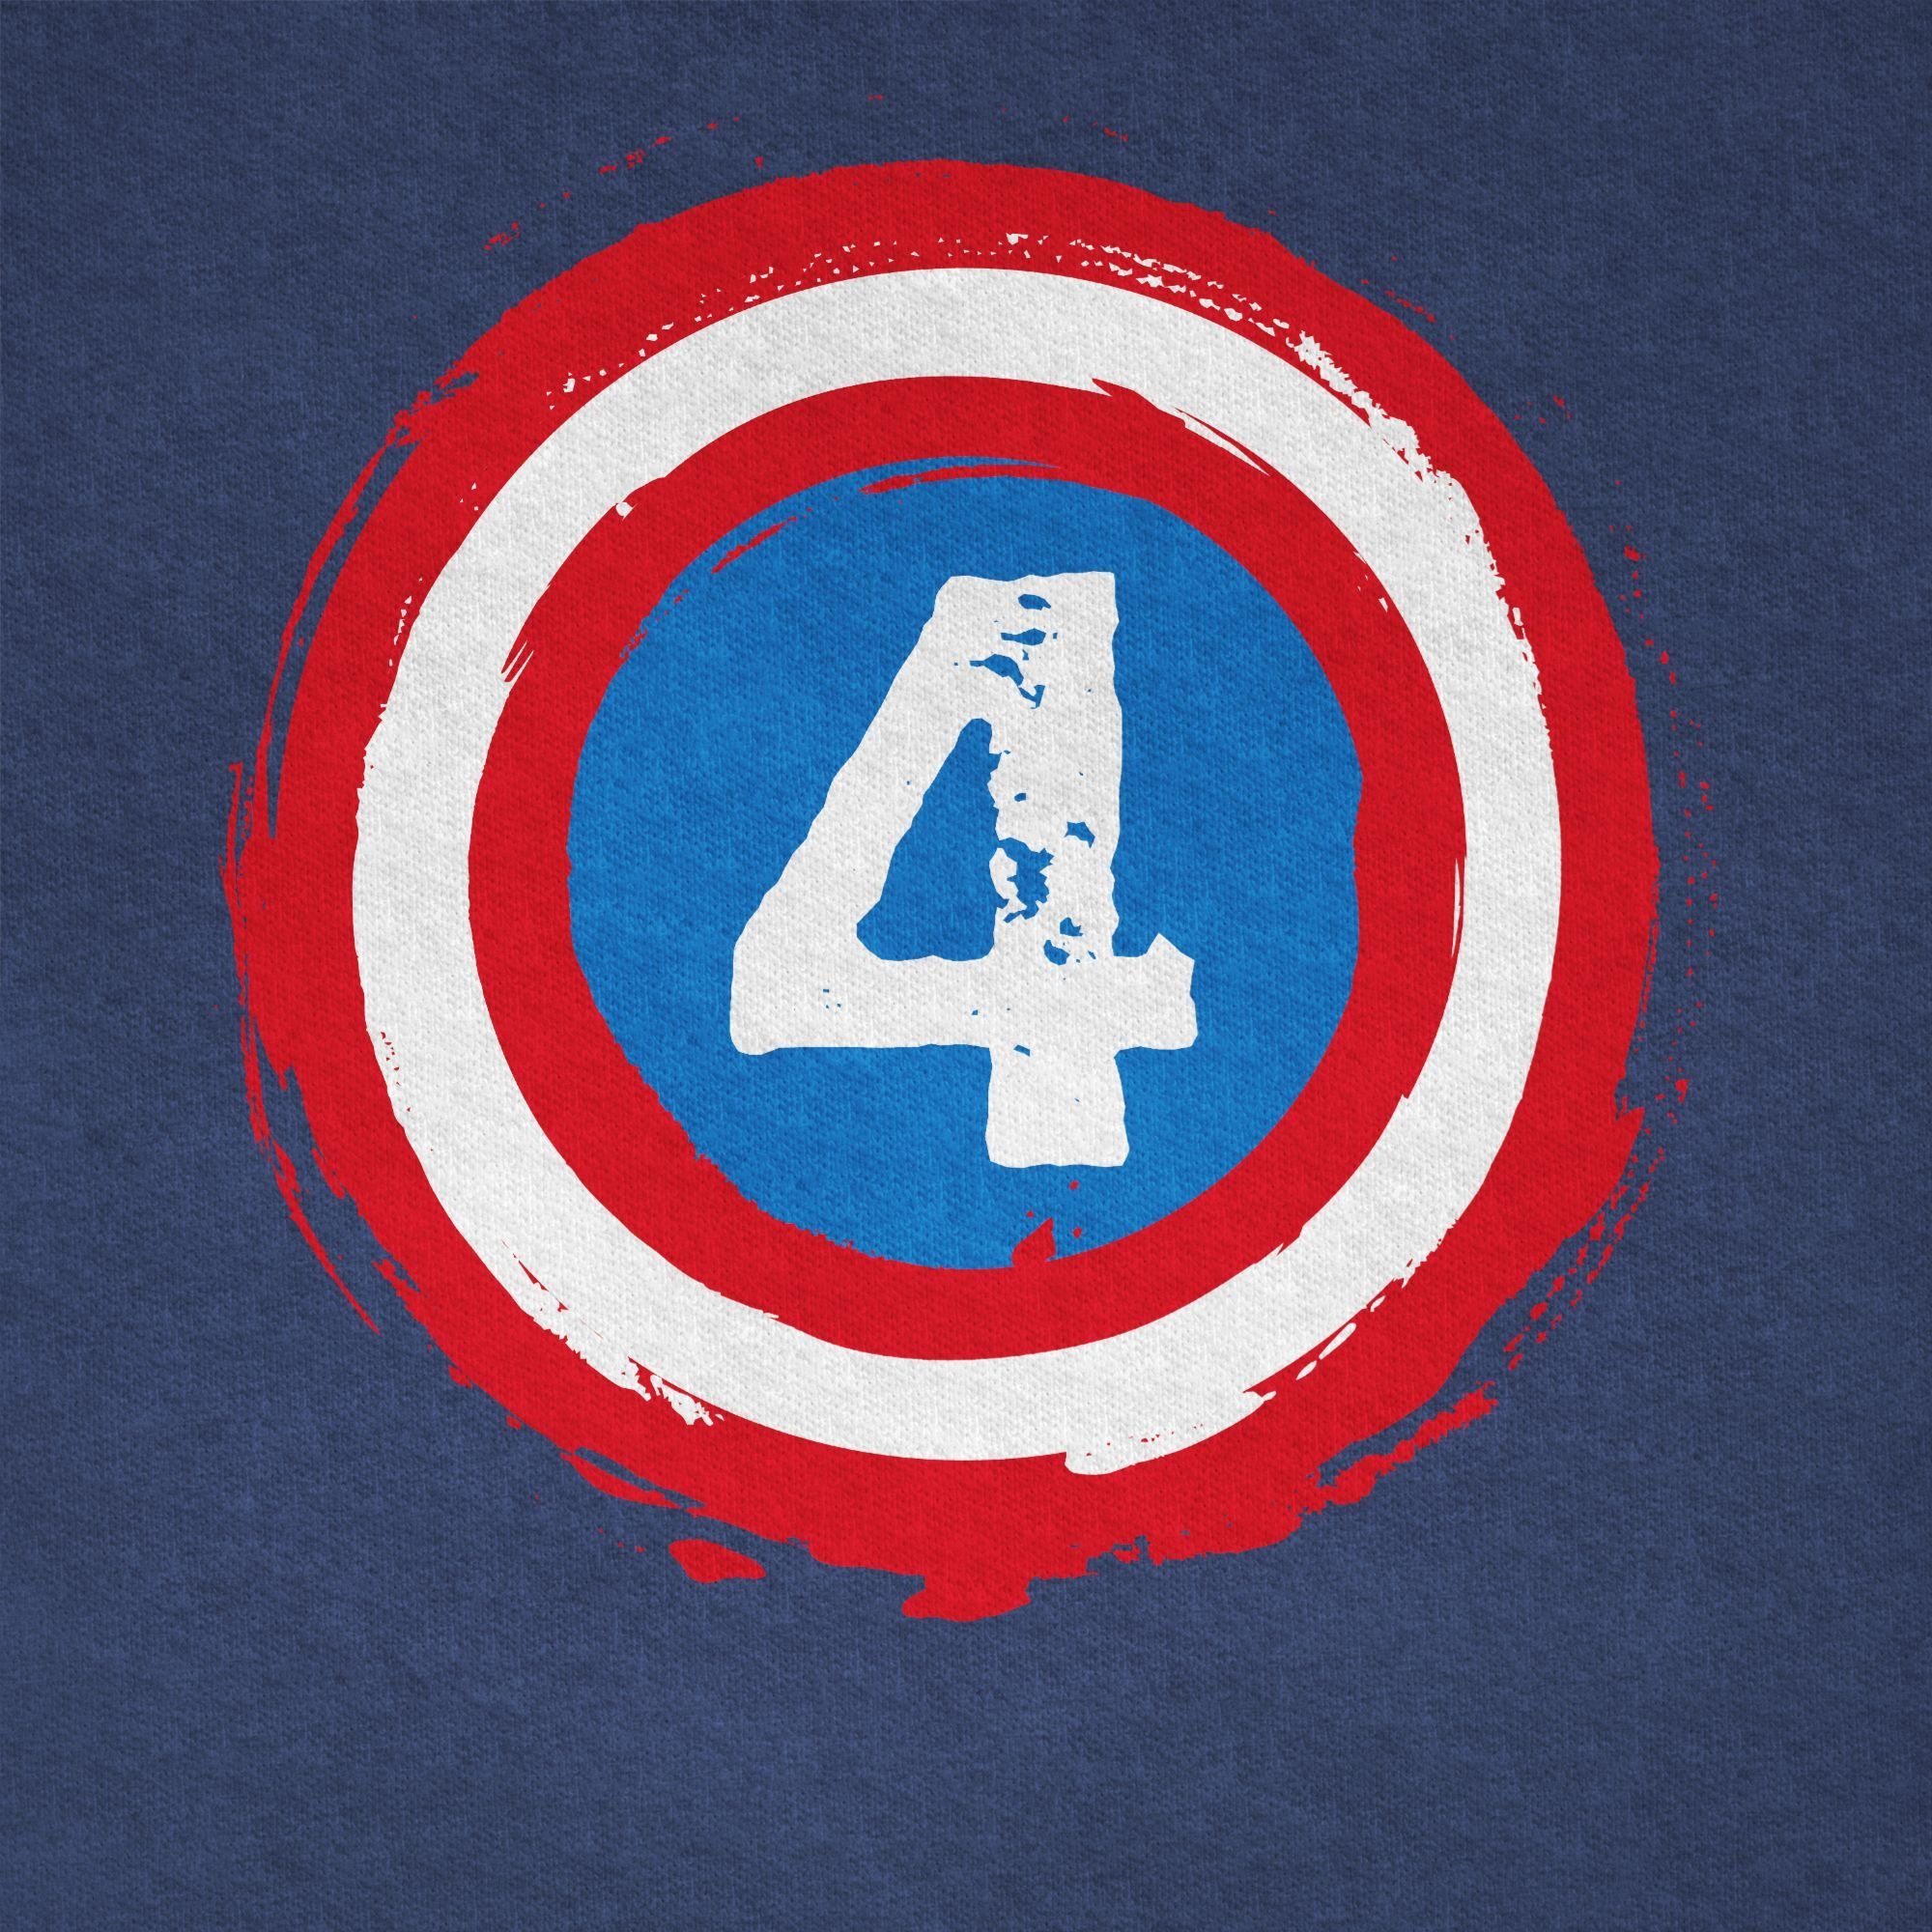 T-Shirt 4. Meliert Superhelden Vier Dunkelblau Shirtracer Schild 3 Geburtstag